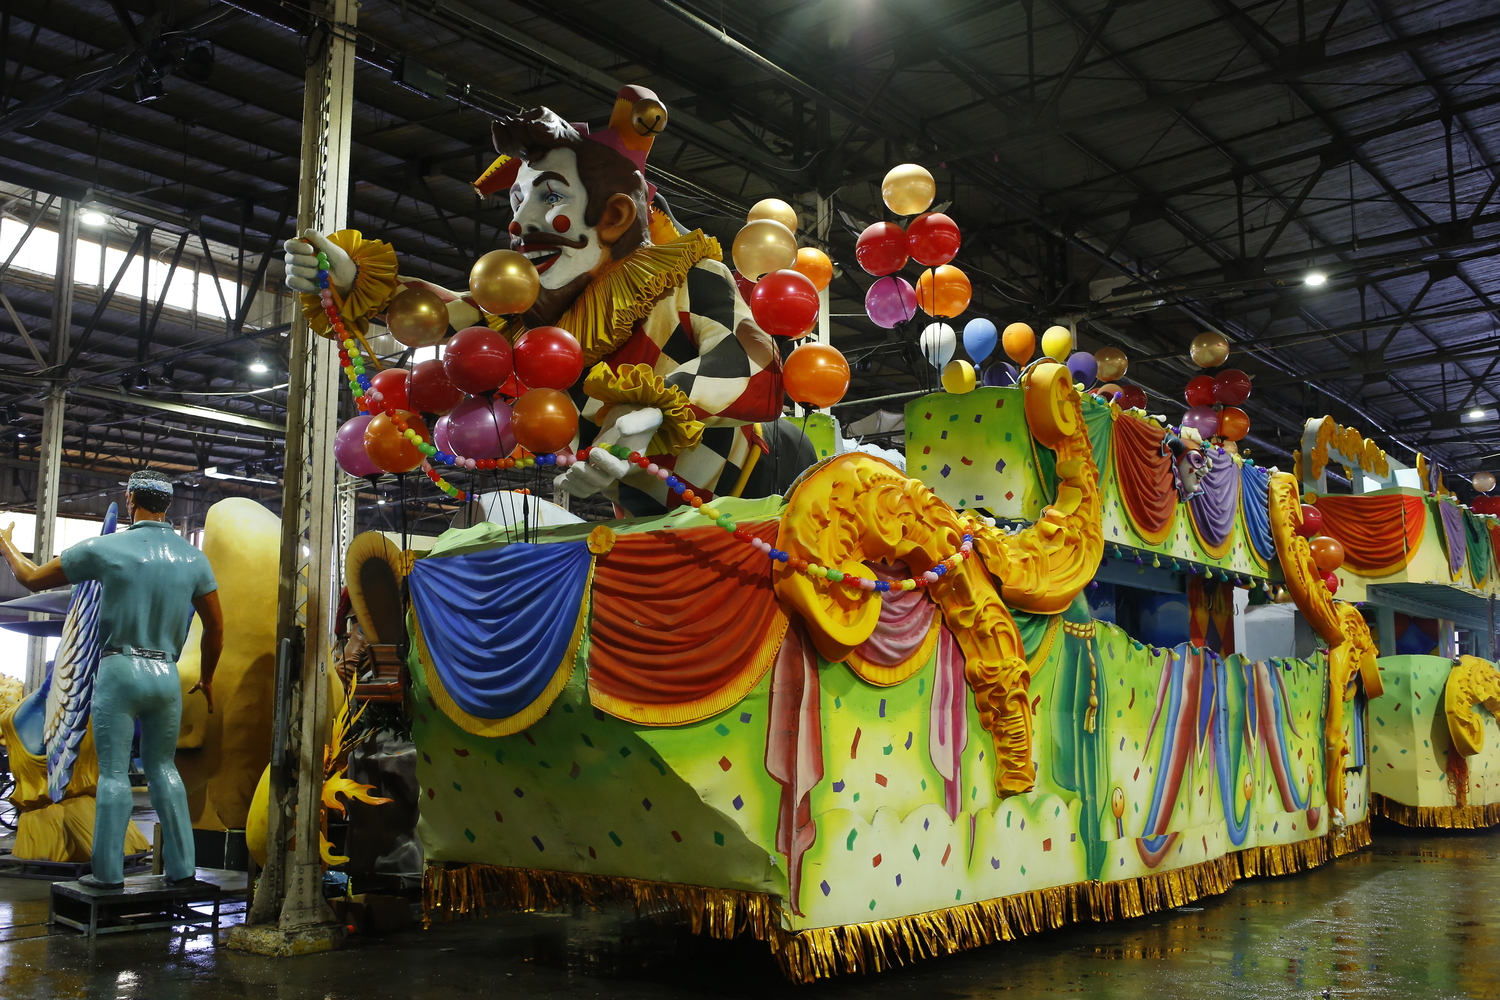 Mardi Gras World est une attraction qui permet de voir les différents ateliers d’artistes et de confection des chars. Ici des chars sont exposés © Globe Reporters